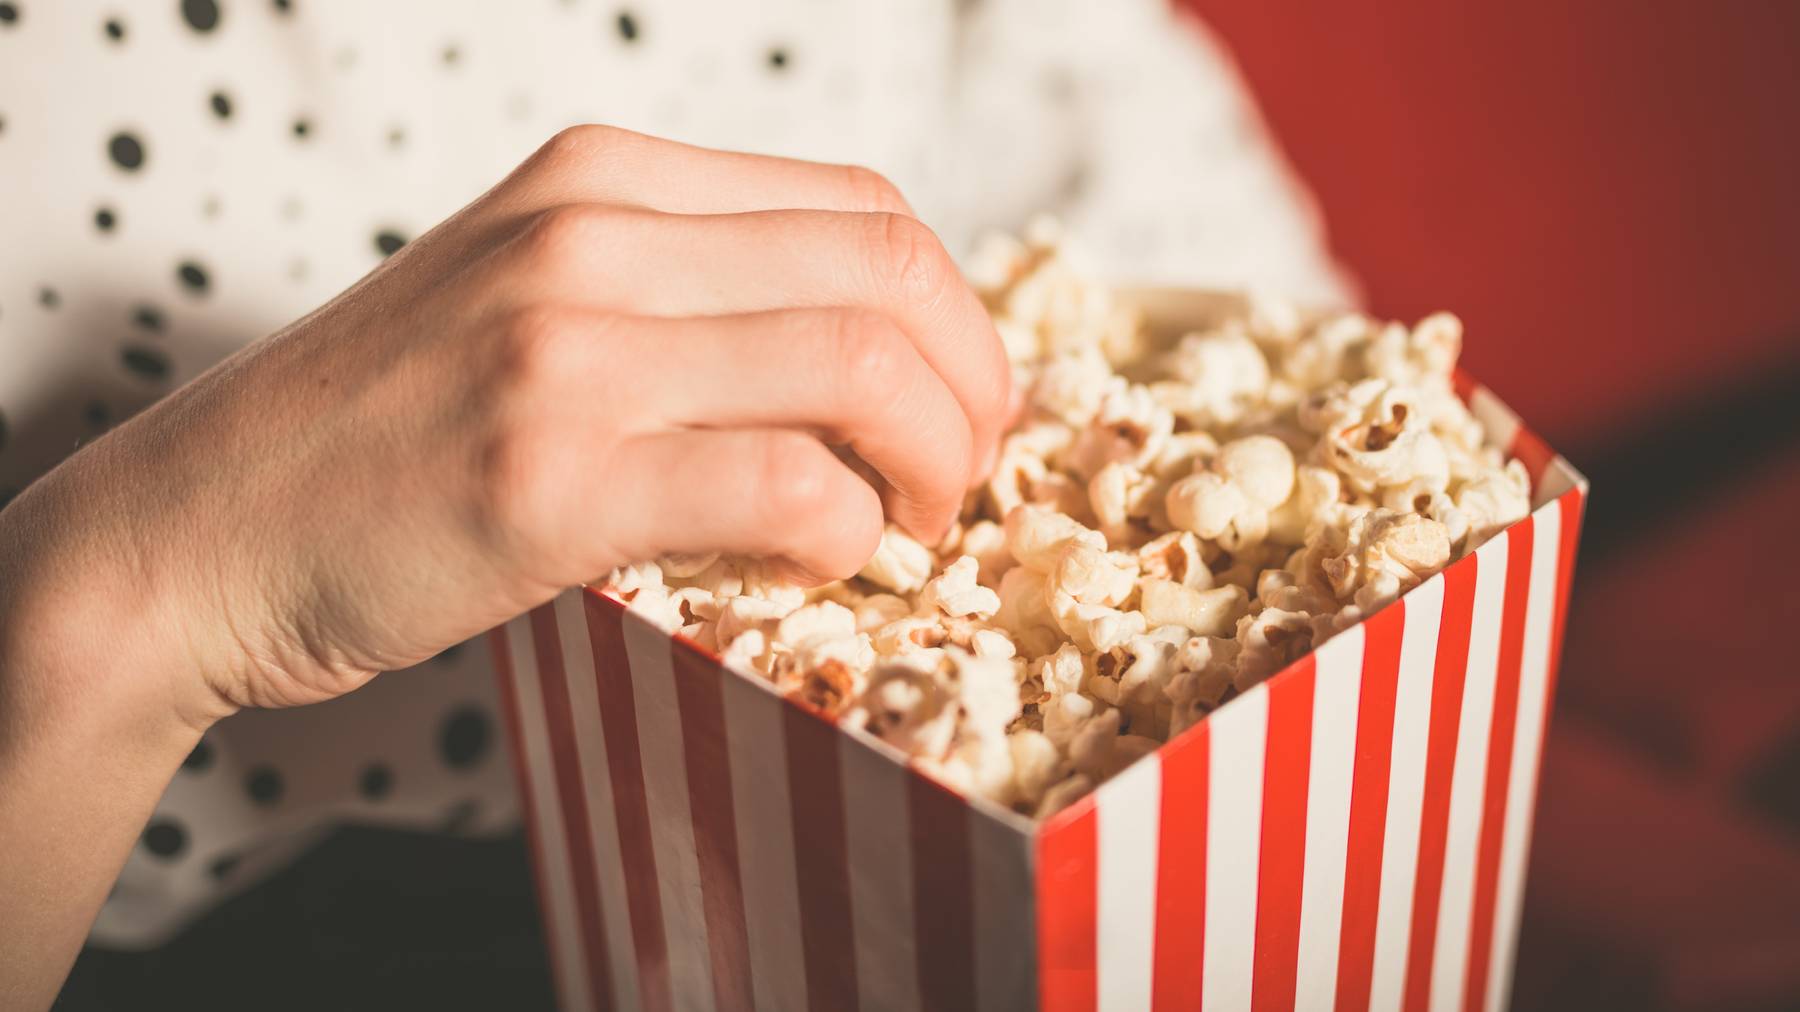 Entscheidet man sich gegen einen Kinobesuch, muss man womöglich auch auf eine solche Portion Popcorn verzichten.